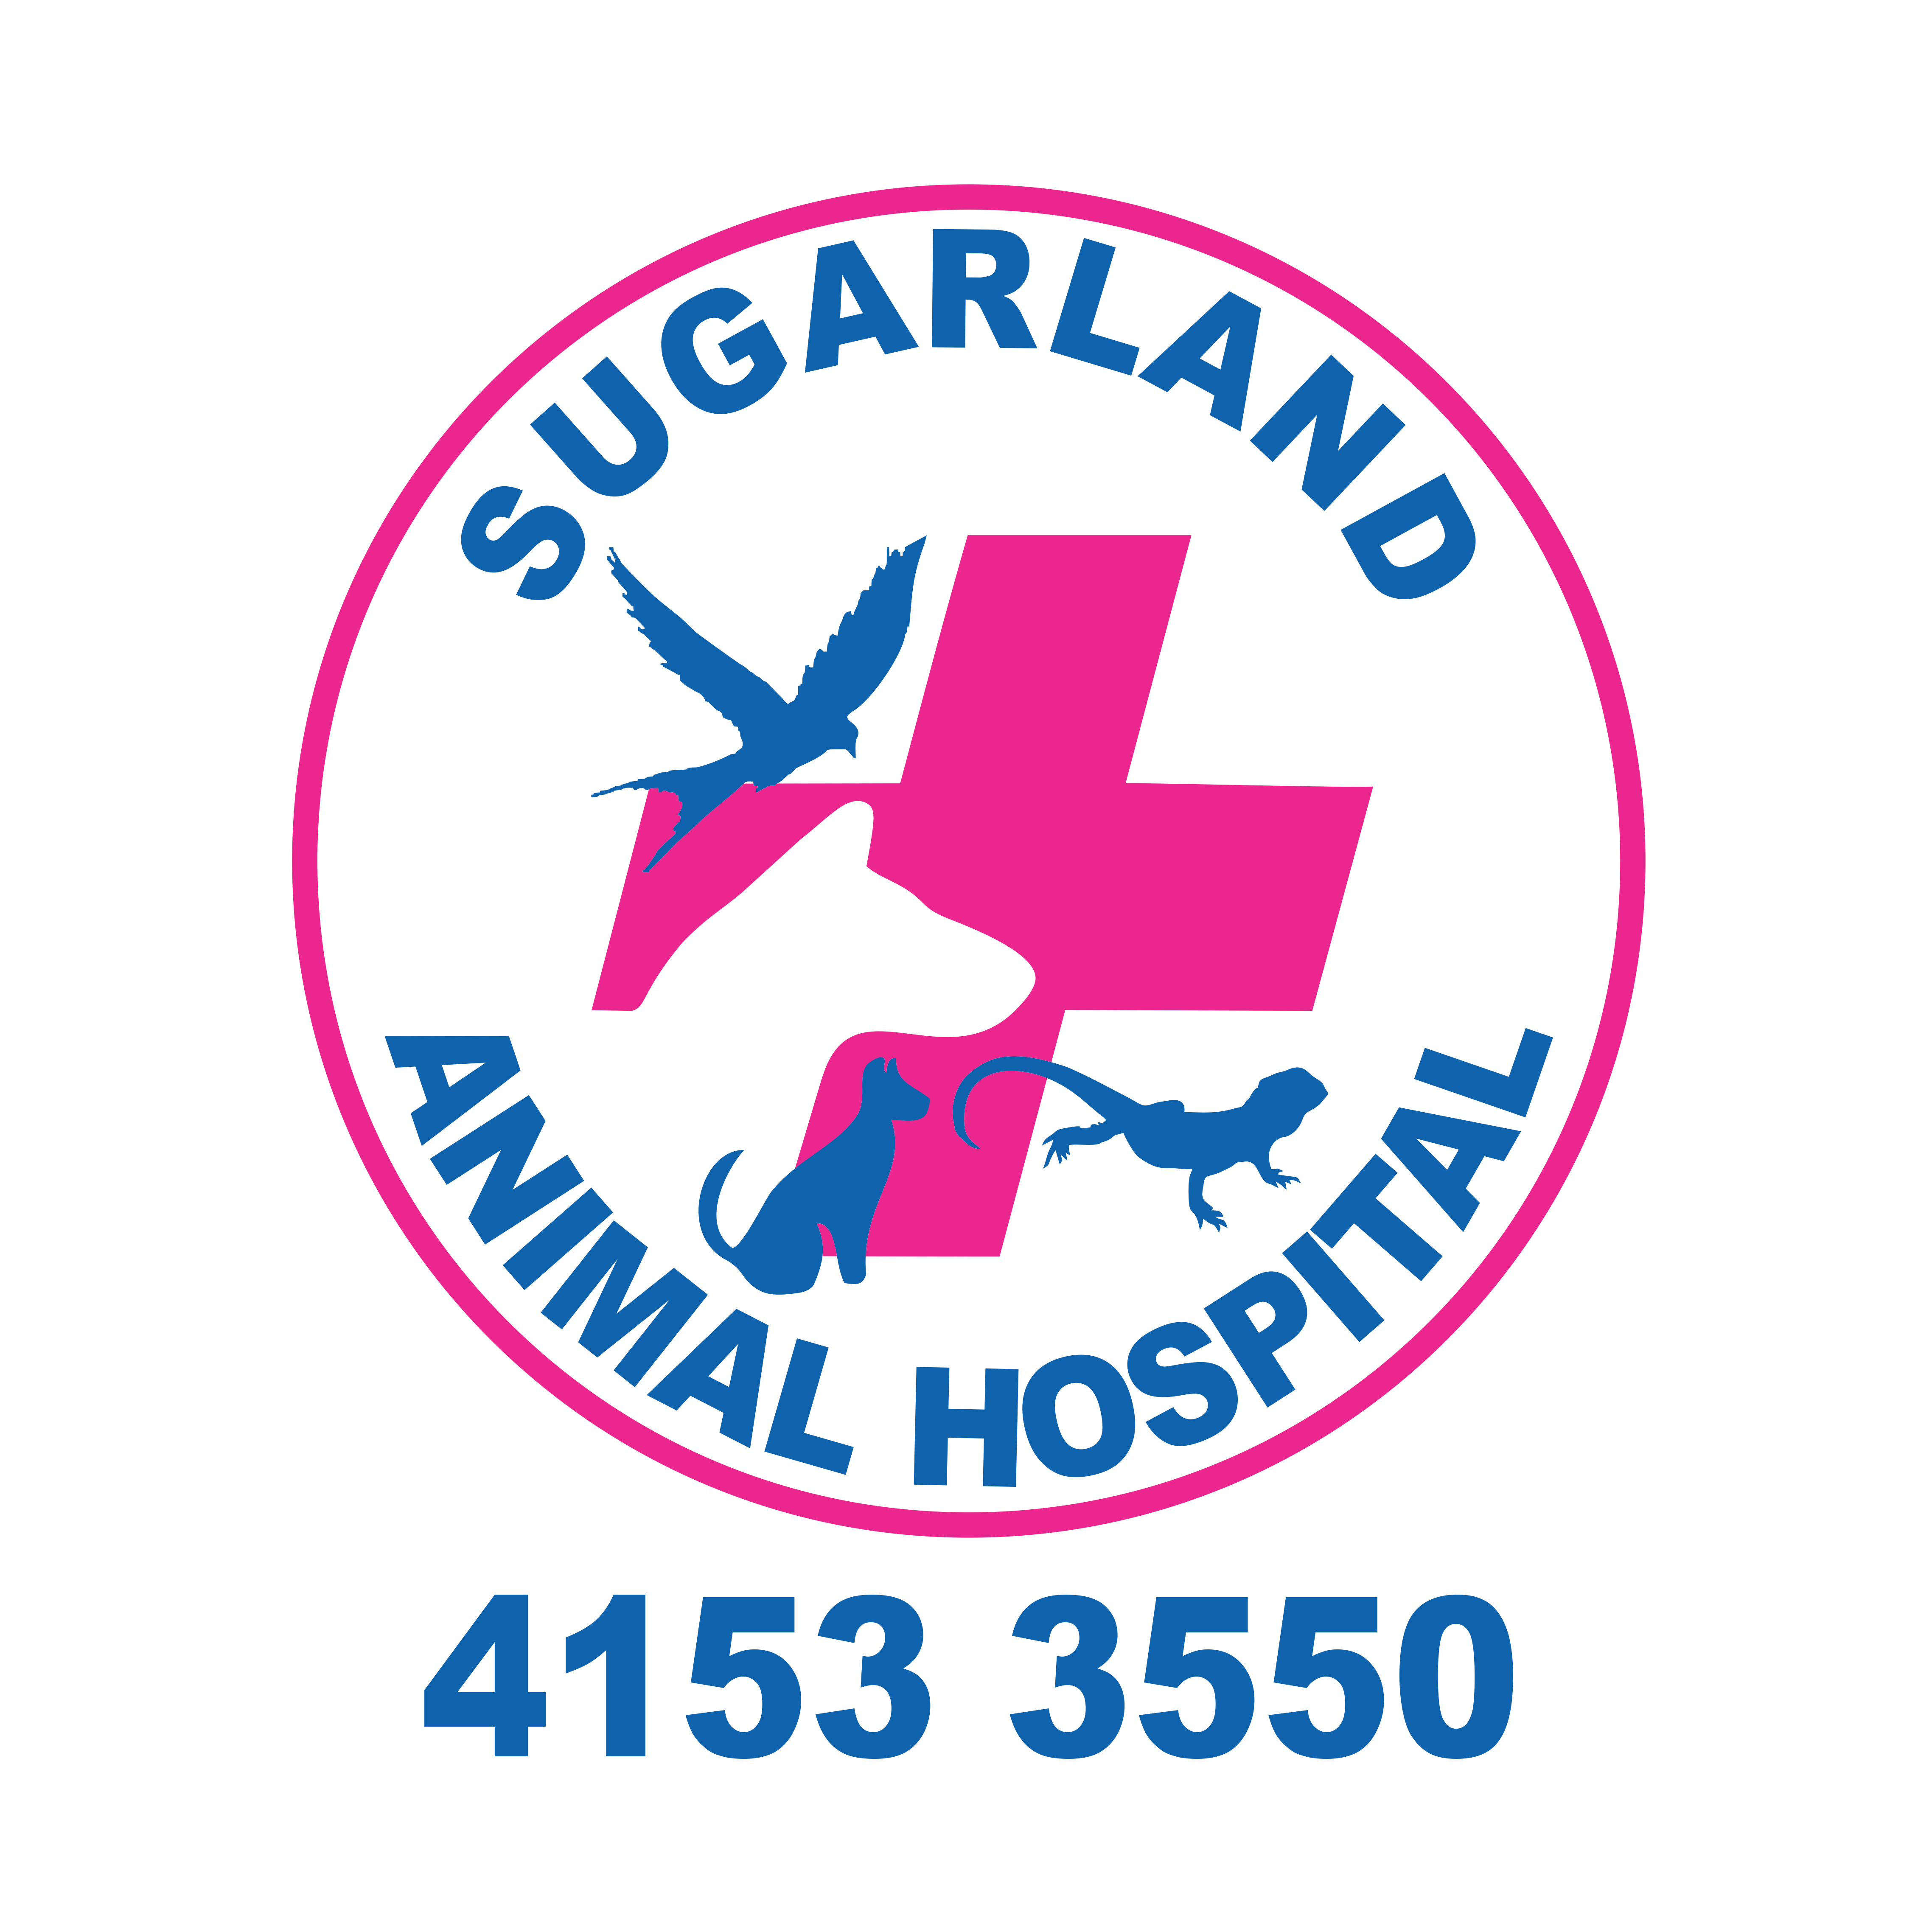 Sugarland Animal Hospital - Avoca, QLD 4670 - (07) 4151 3550 | ShowMeLocal.com